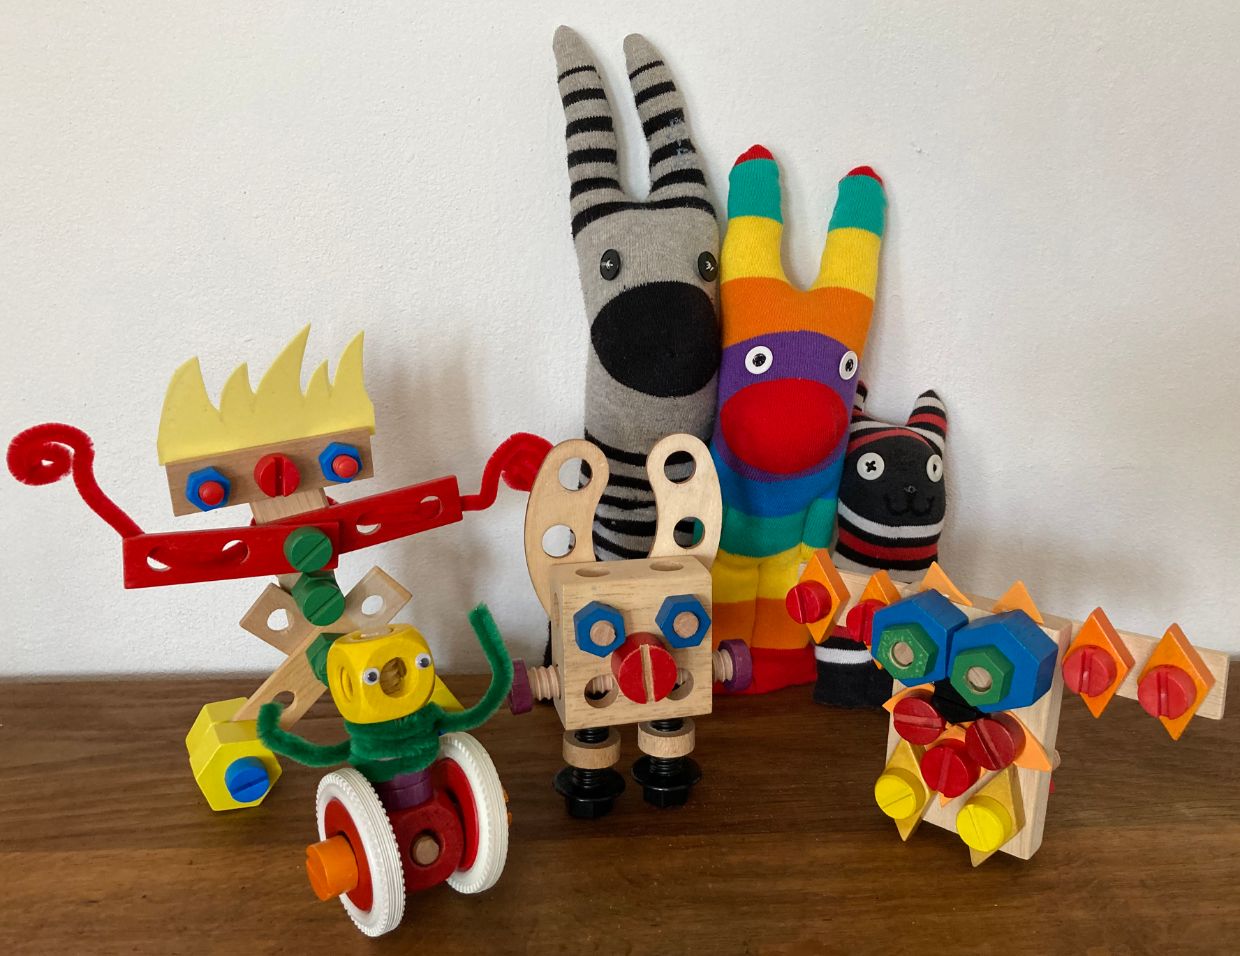 Puppen, Plüsch und Pionierinnengeist -
Frauen im Spielwarendesign, Basler Ferienpass: Selbstgebautes Spielzeug